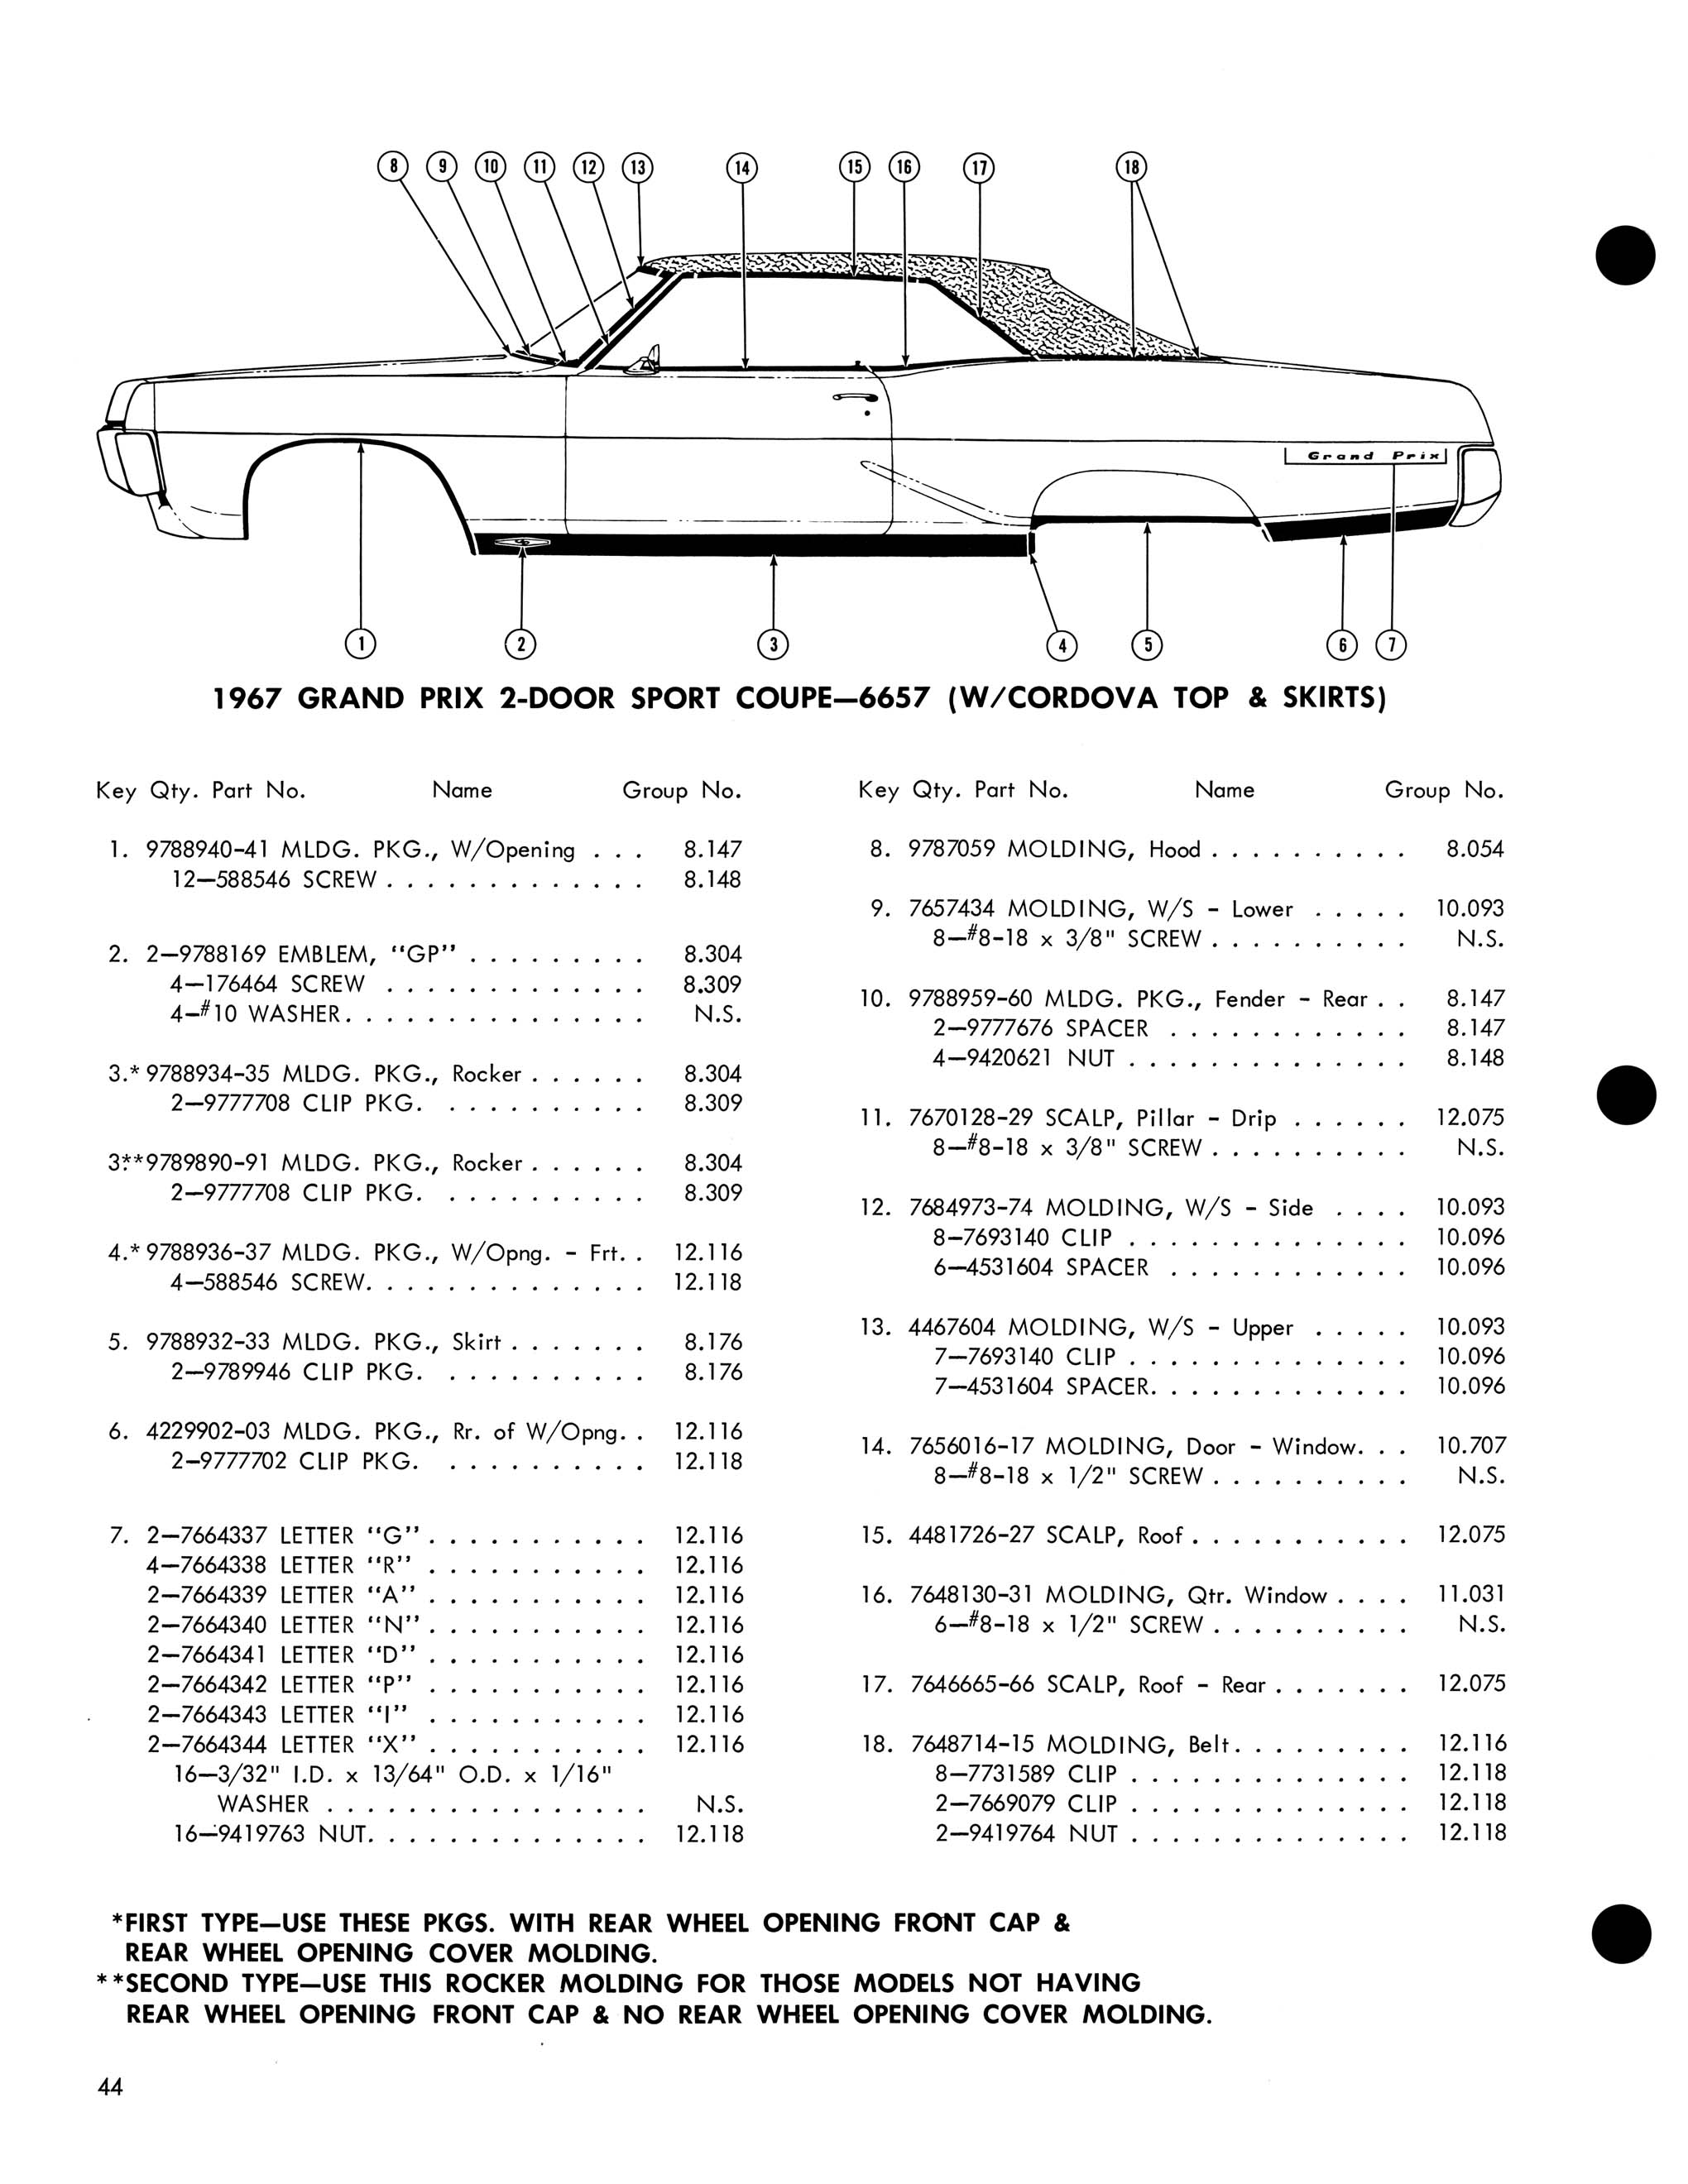 1967 Pontiac Molding and Clip Catalog-44